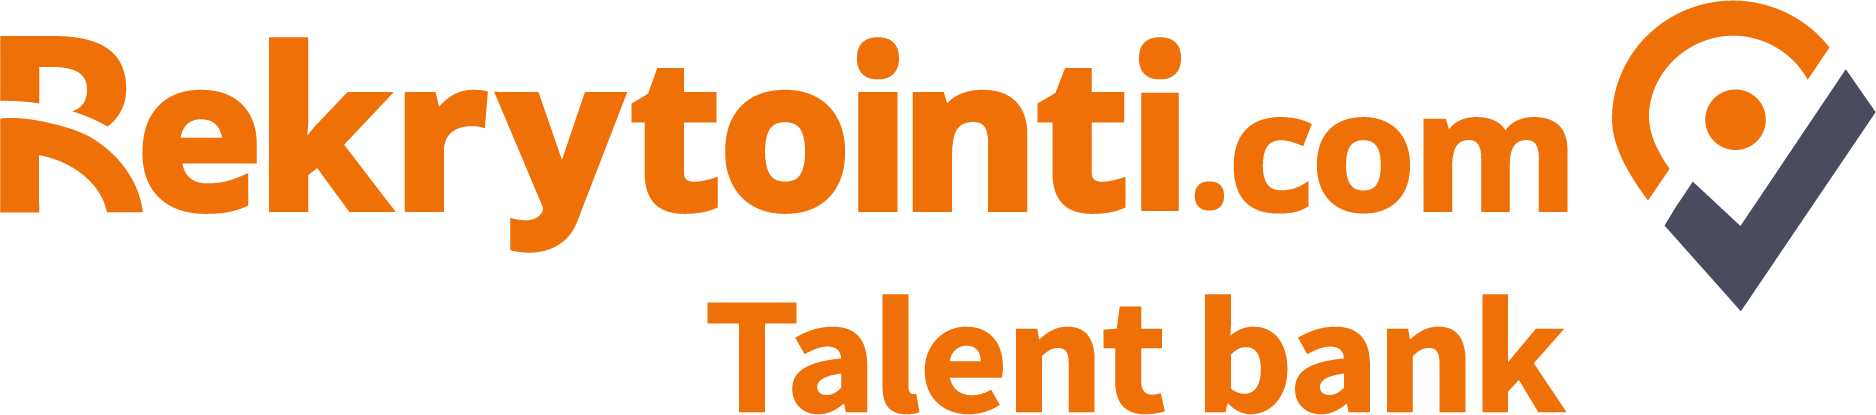 Rekrytointi.com Talent Bank logo